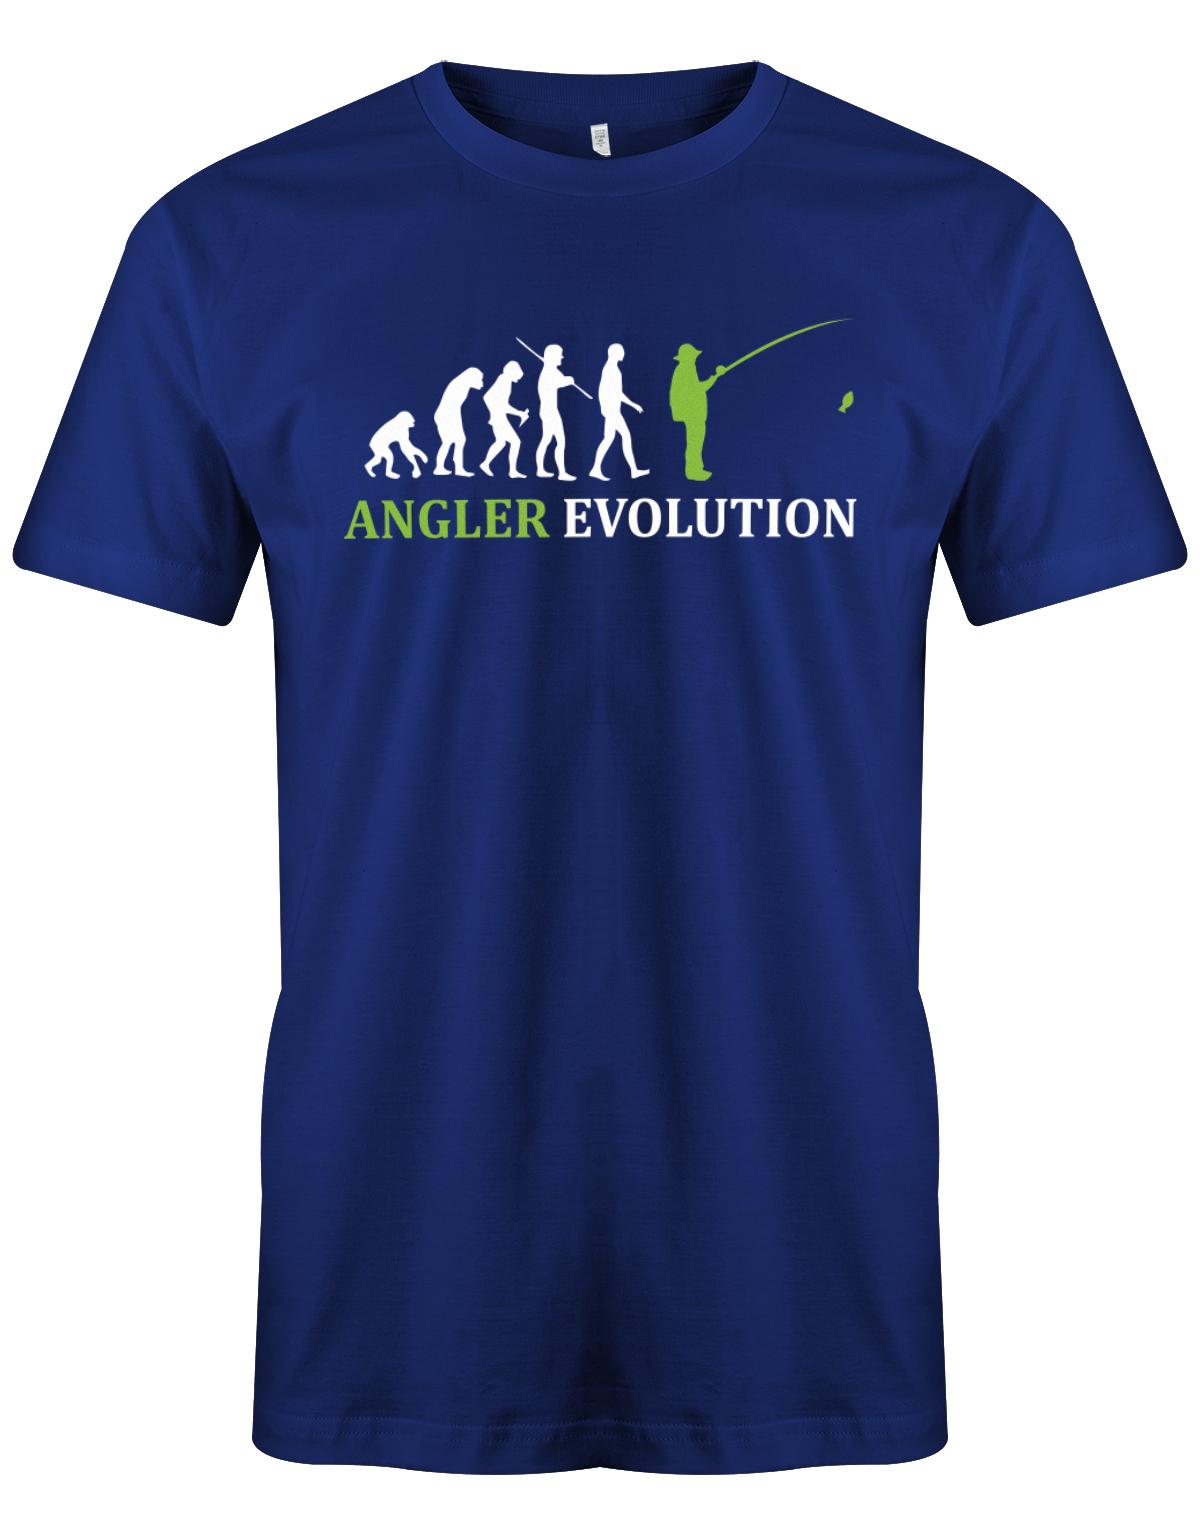 Angler-Evolution-Herren-Shirt-Royalblau